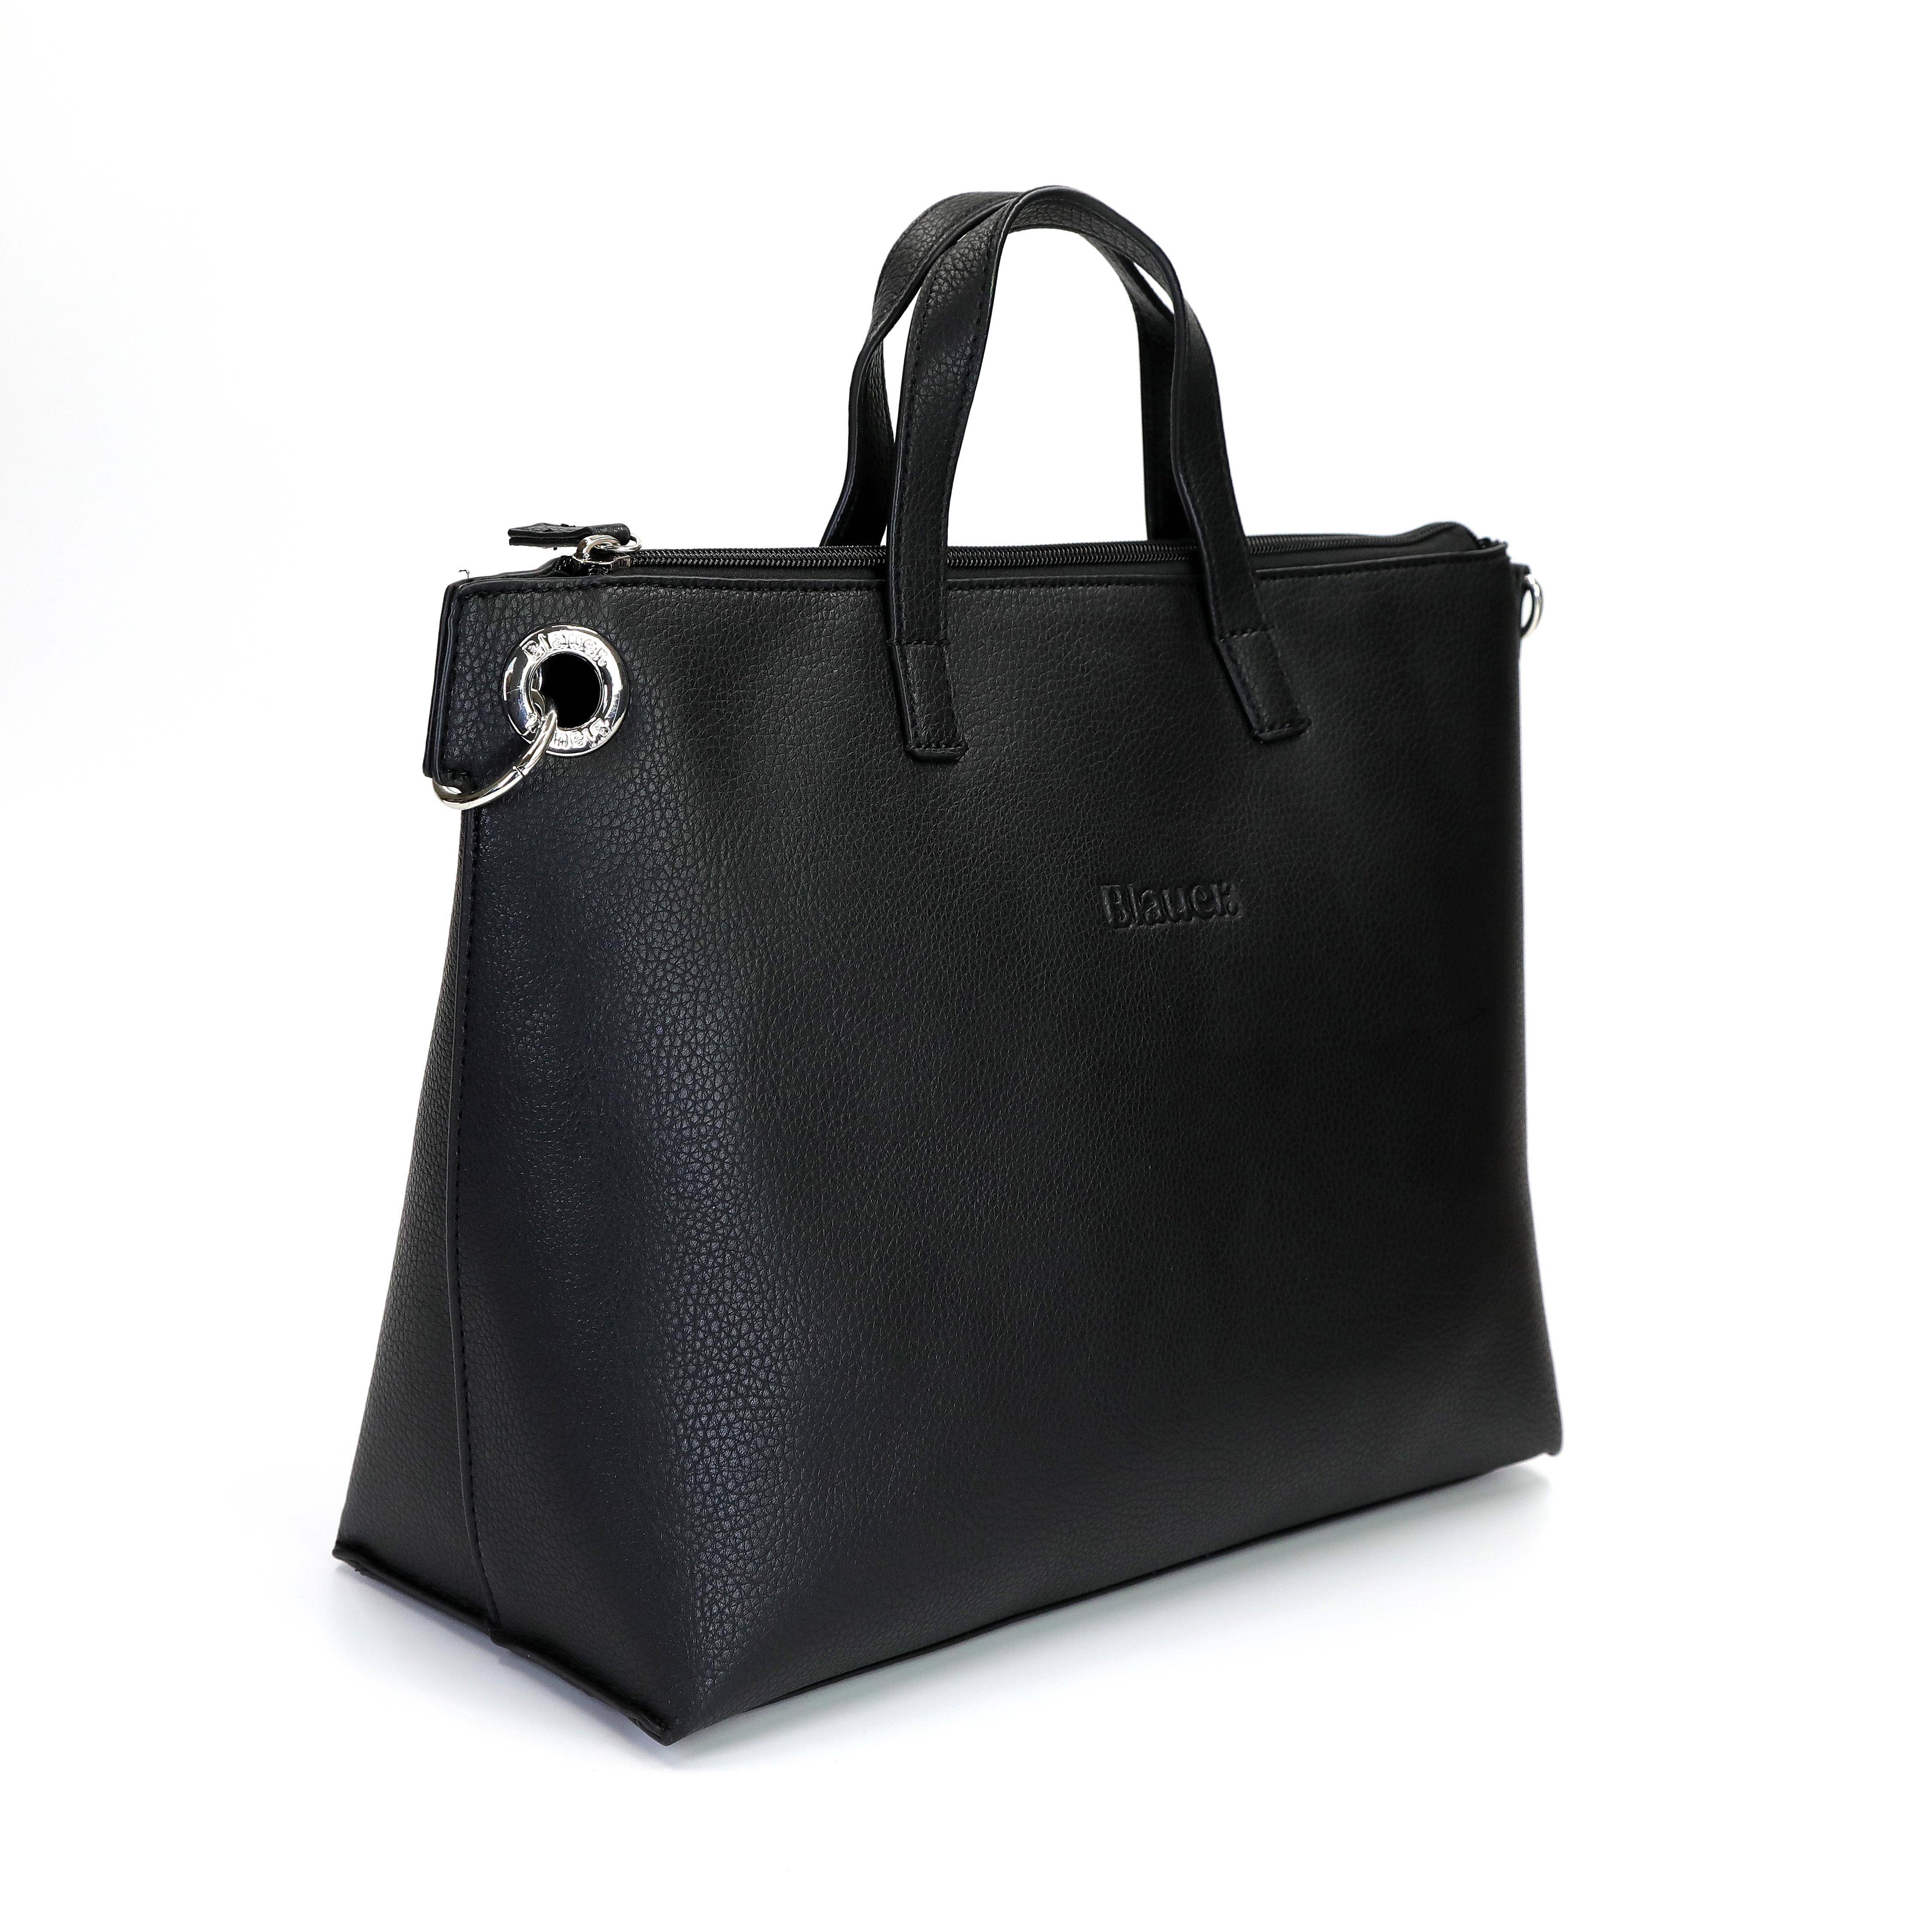 Женская сумка Blauer, черная, цвет черный, размер ONE SIZE - фото 2